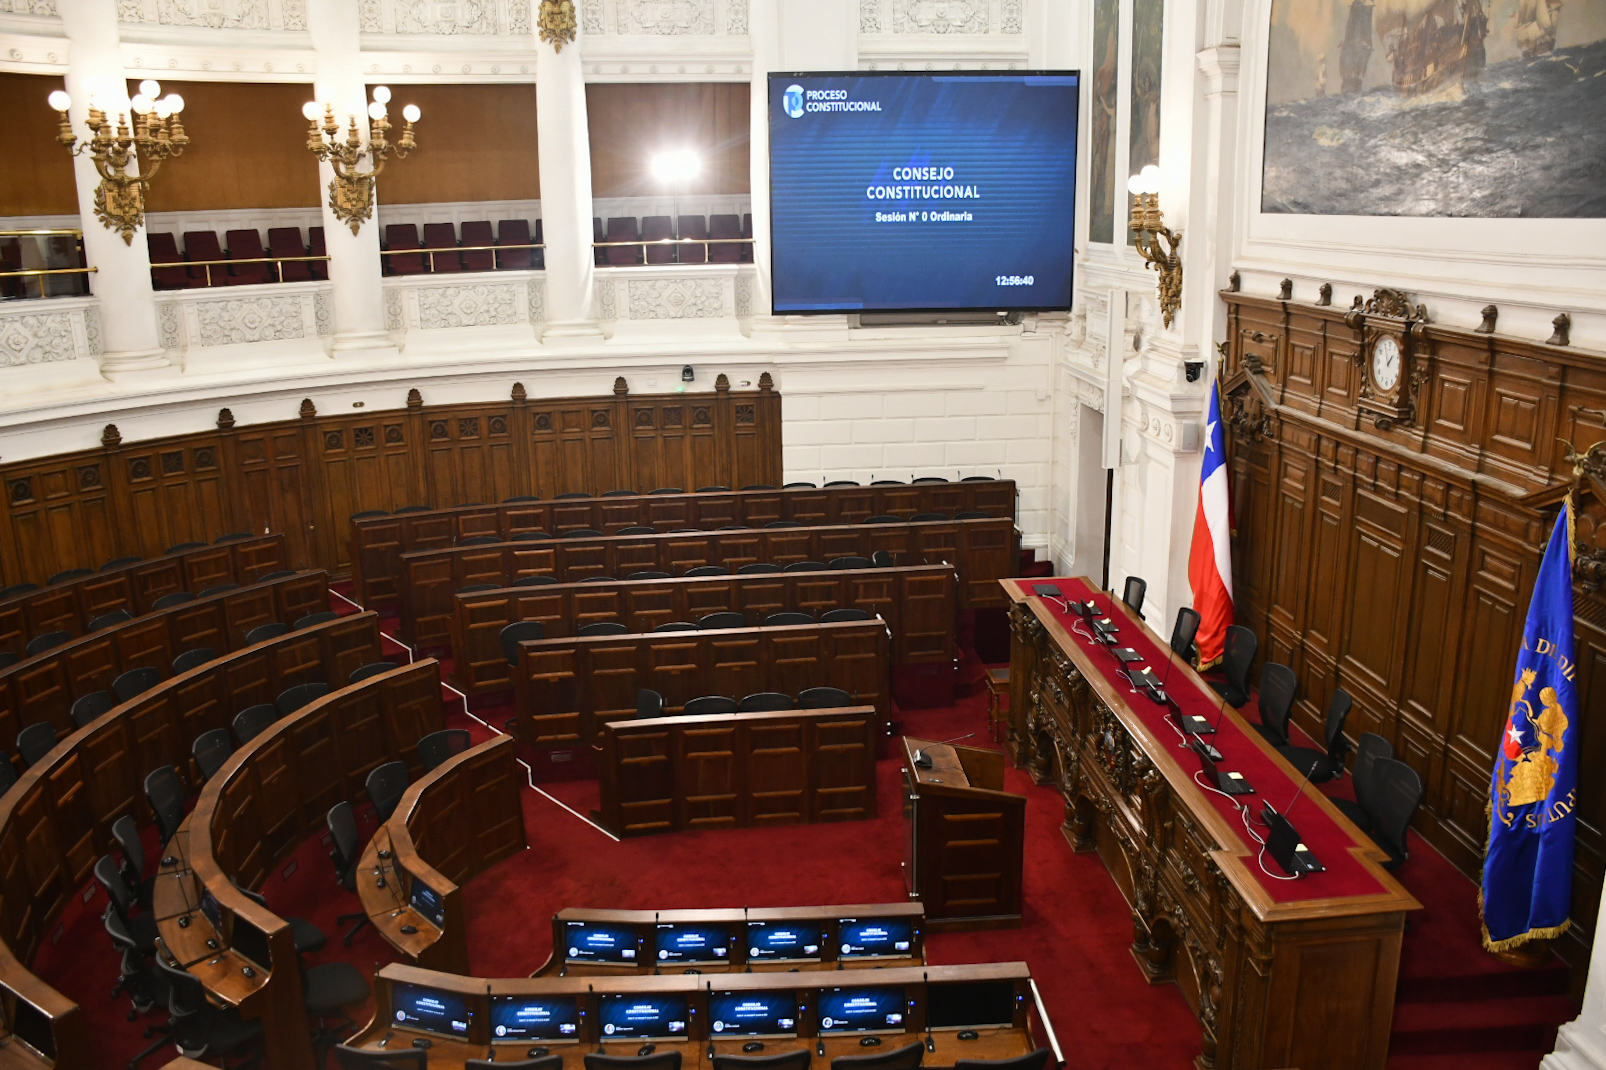 Lugar Consejo Constitucional. Ex Congreso Nacional